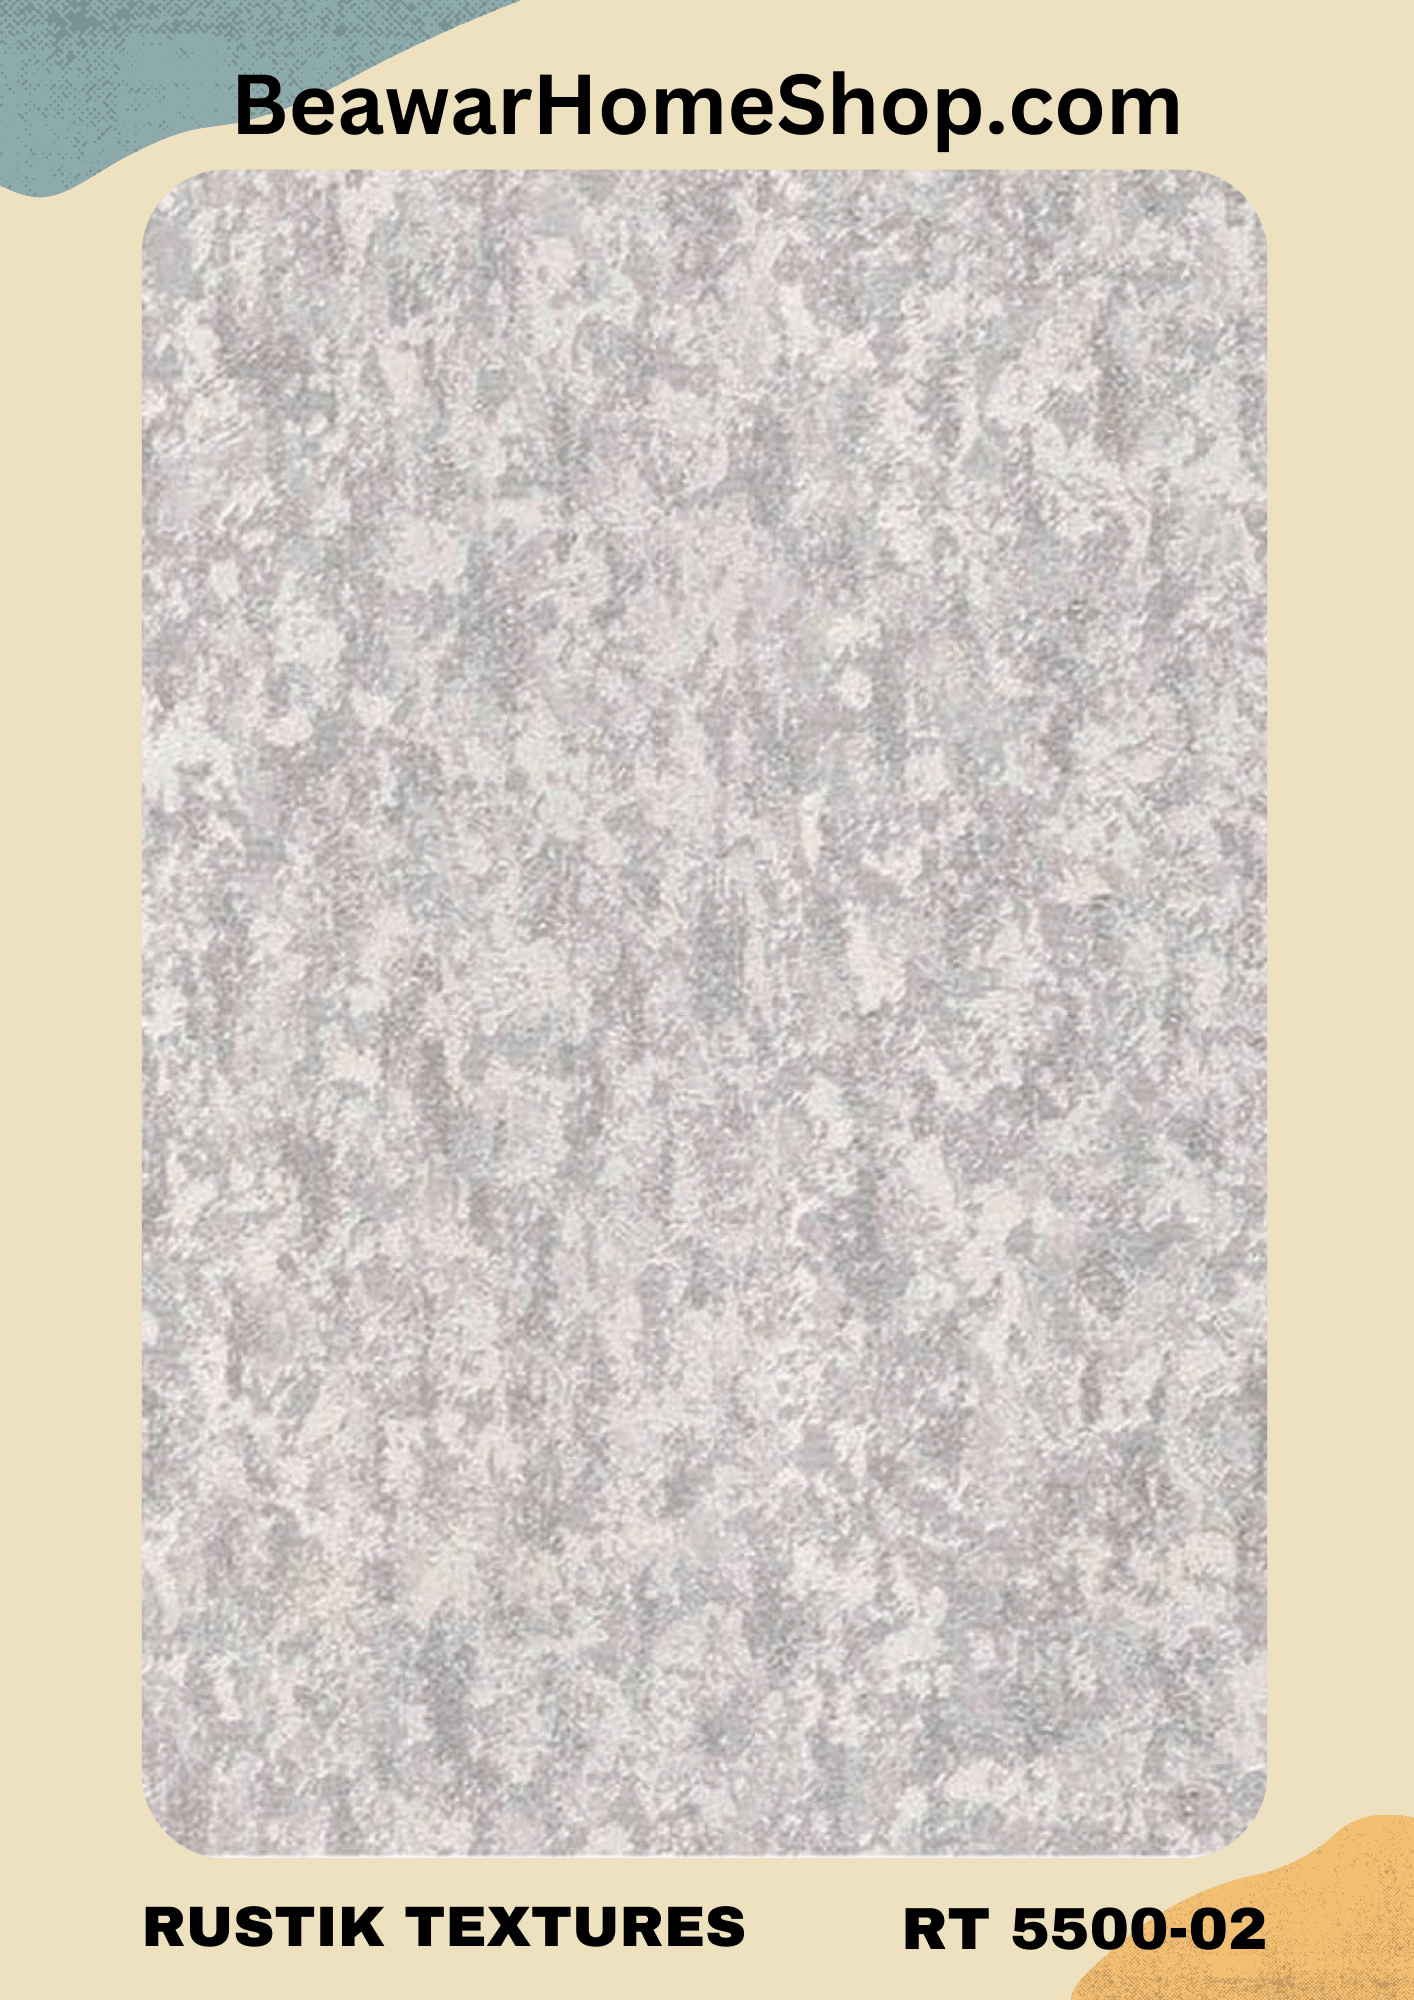 DC Rustik Textures Wallpaper RT 55001-04